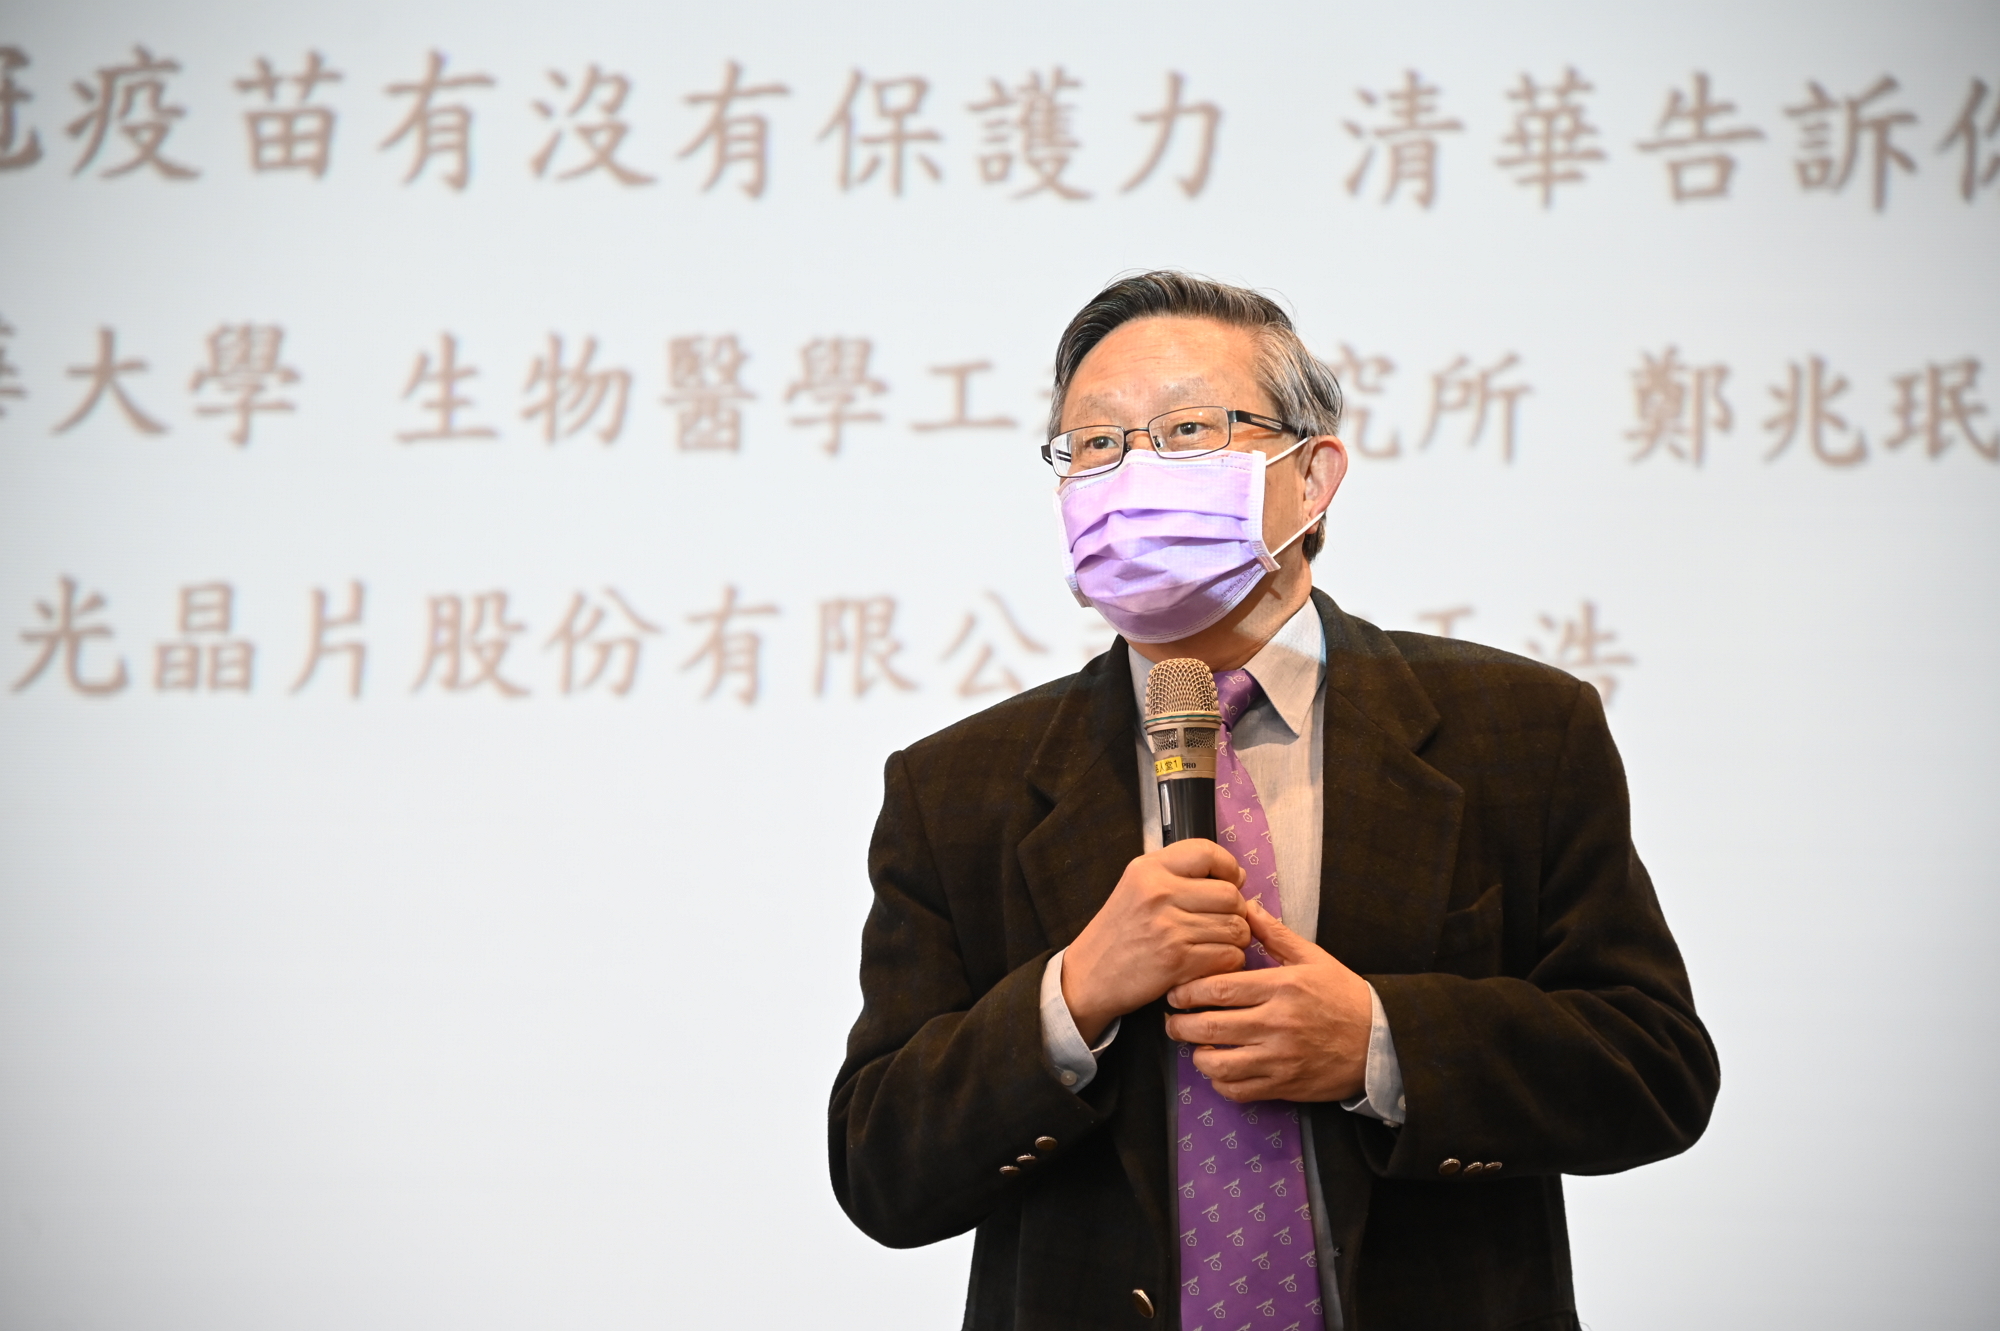 賀陳弘校長表示，清華在微機電領域的研究領先，因此發展醫學工程也占優勢